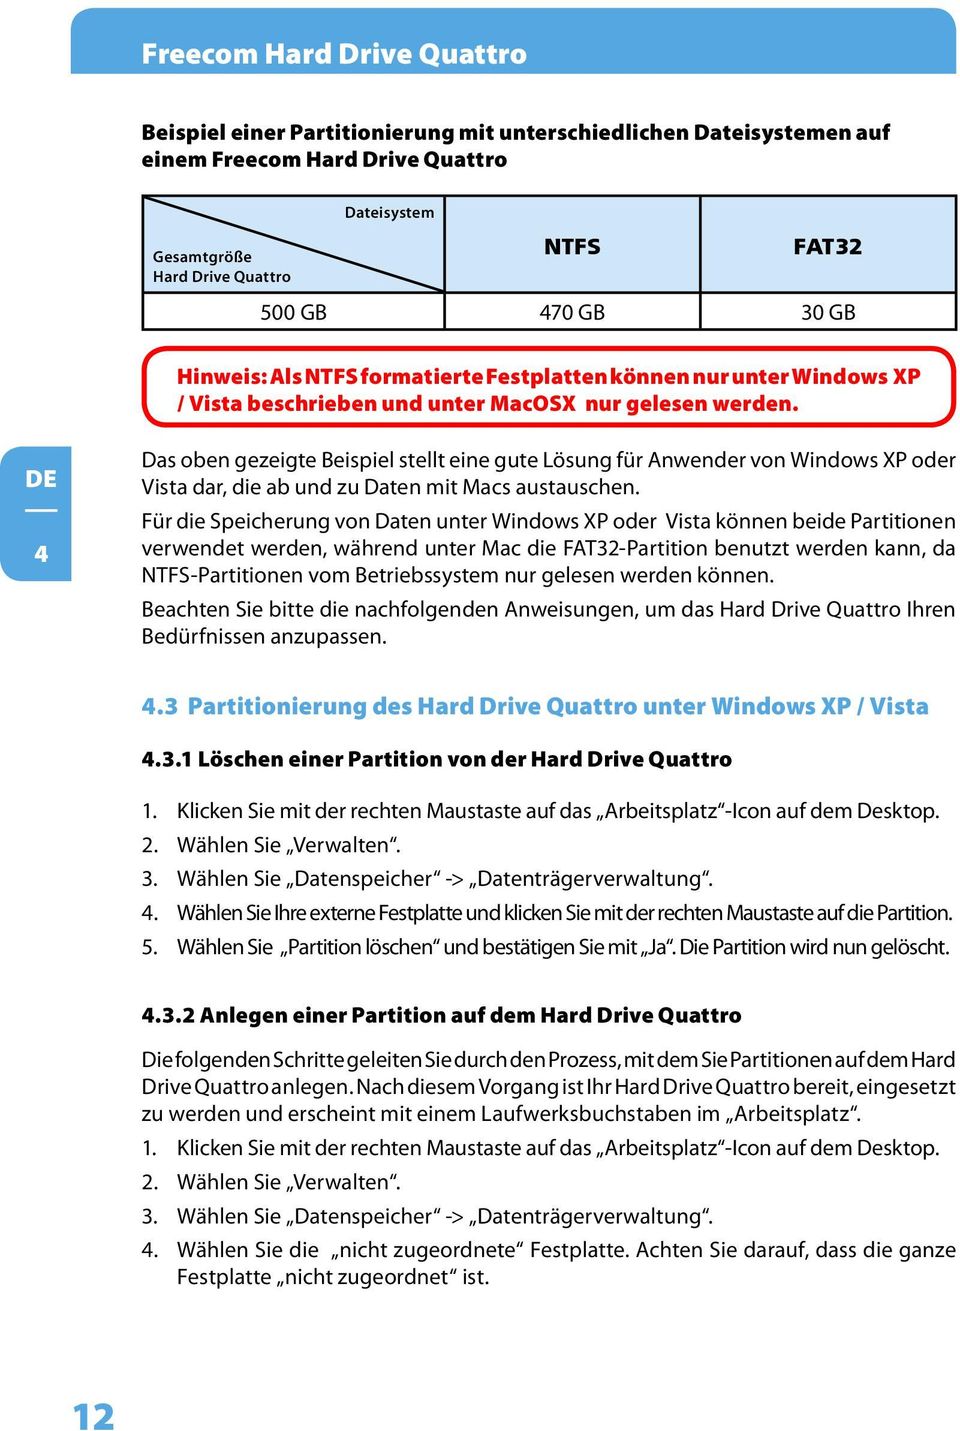 4 Das oben gezeigte Beispiel stellt eine gute Lösung für Anwender von Windows XP oder Vista dar, die ab und zu Daten mit Macs austauschen.